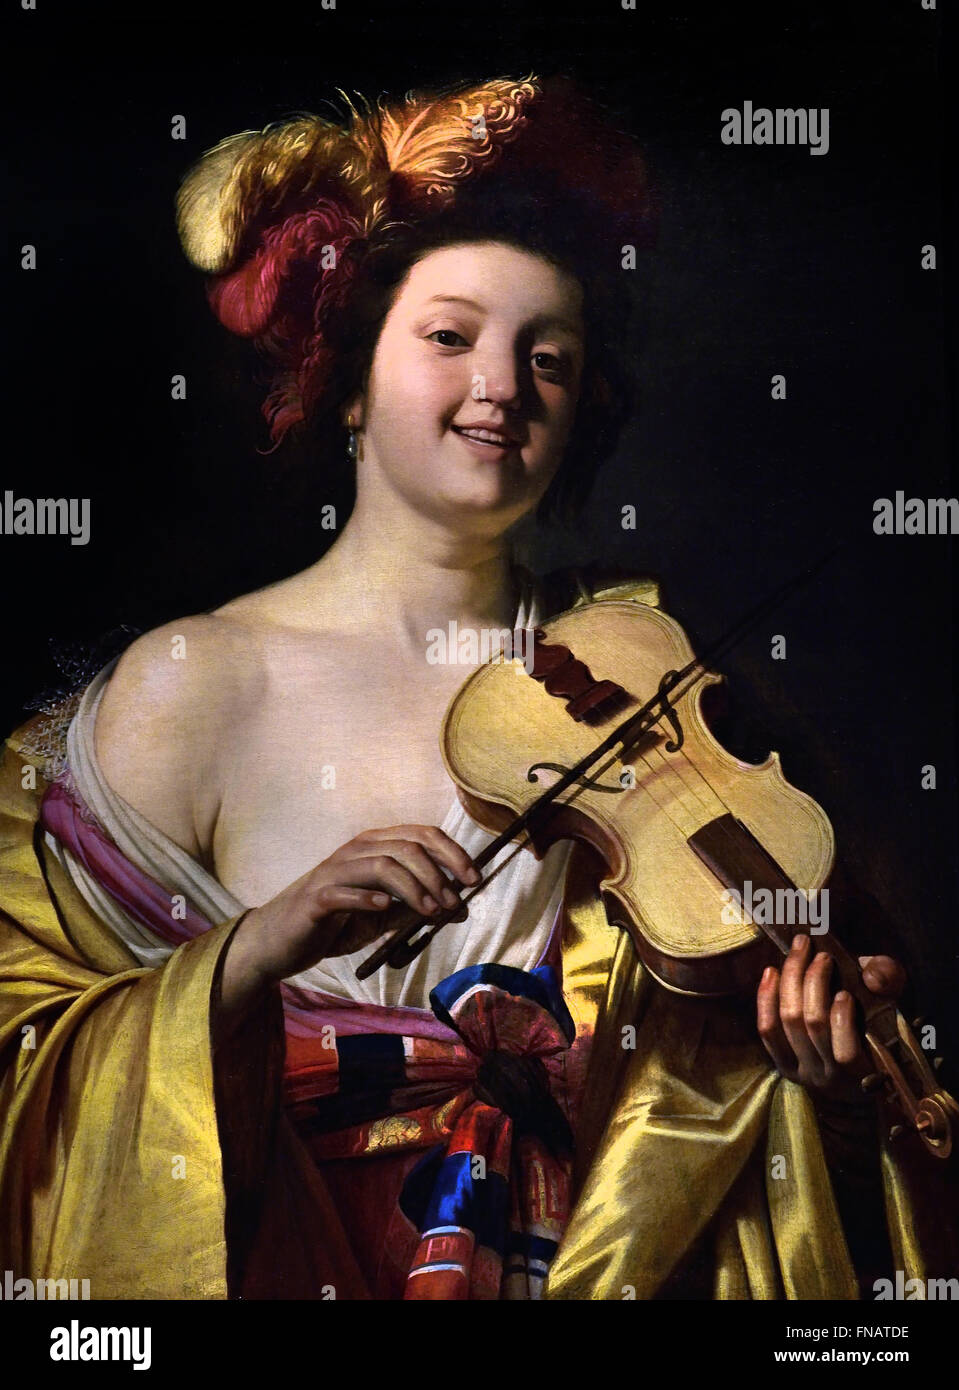 Femme jouant du violon, 1626 par Gerrit van Honthorst Néerlandais Pays-Bas 1590-1656 Banque D'Images